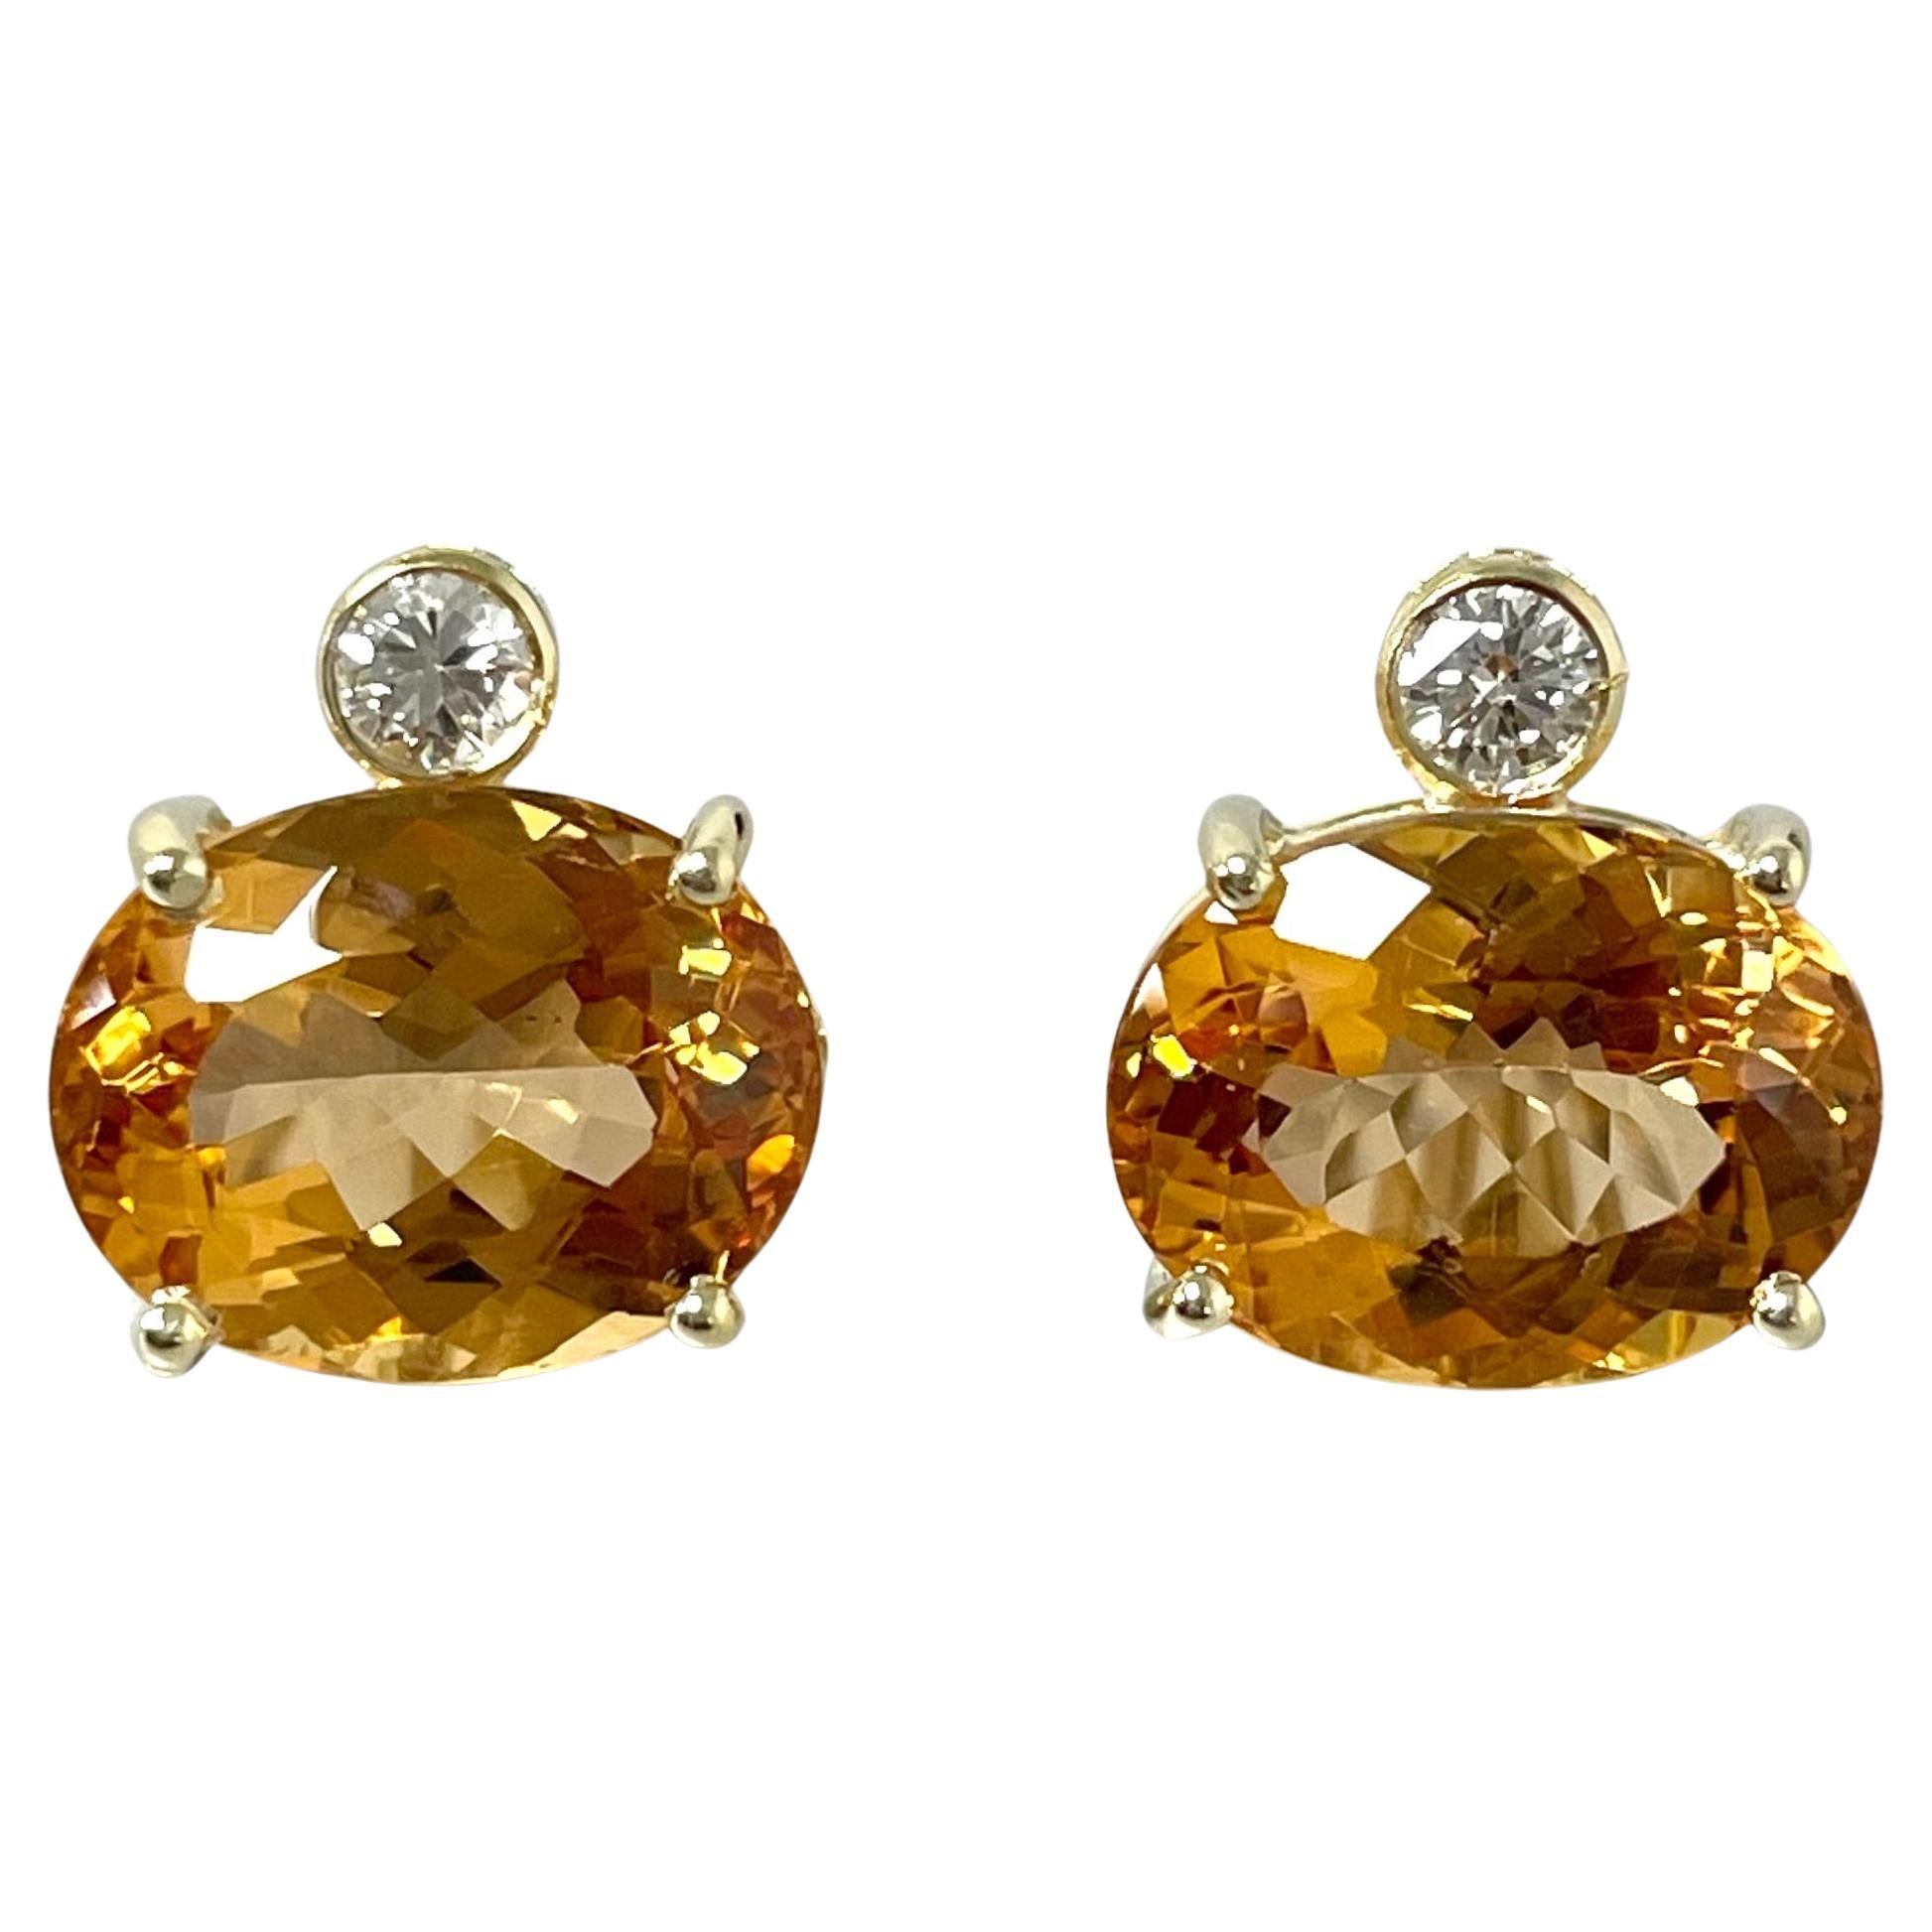 Imperial Topaz & Diamond Earrings in 18k Yellow Gold